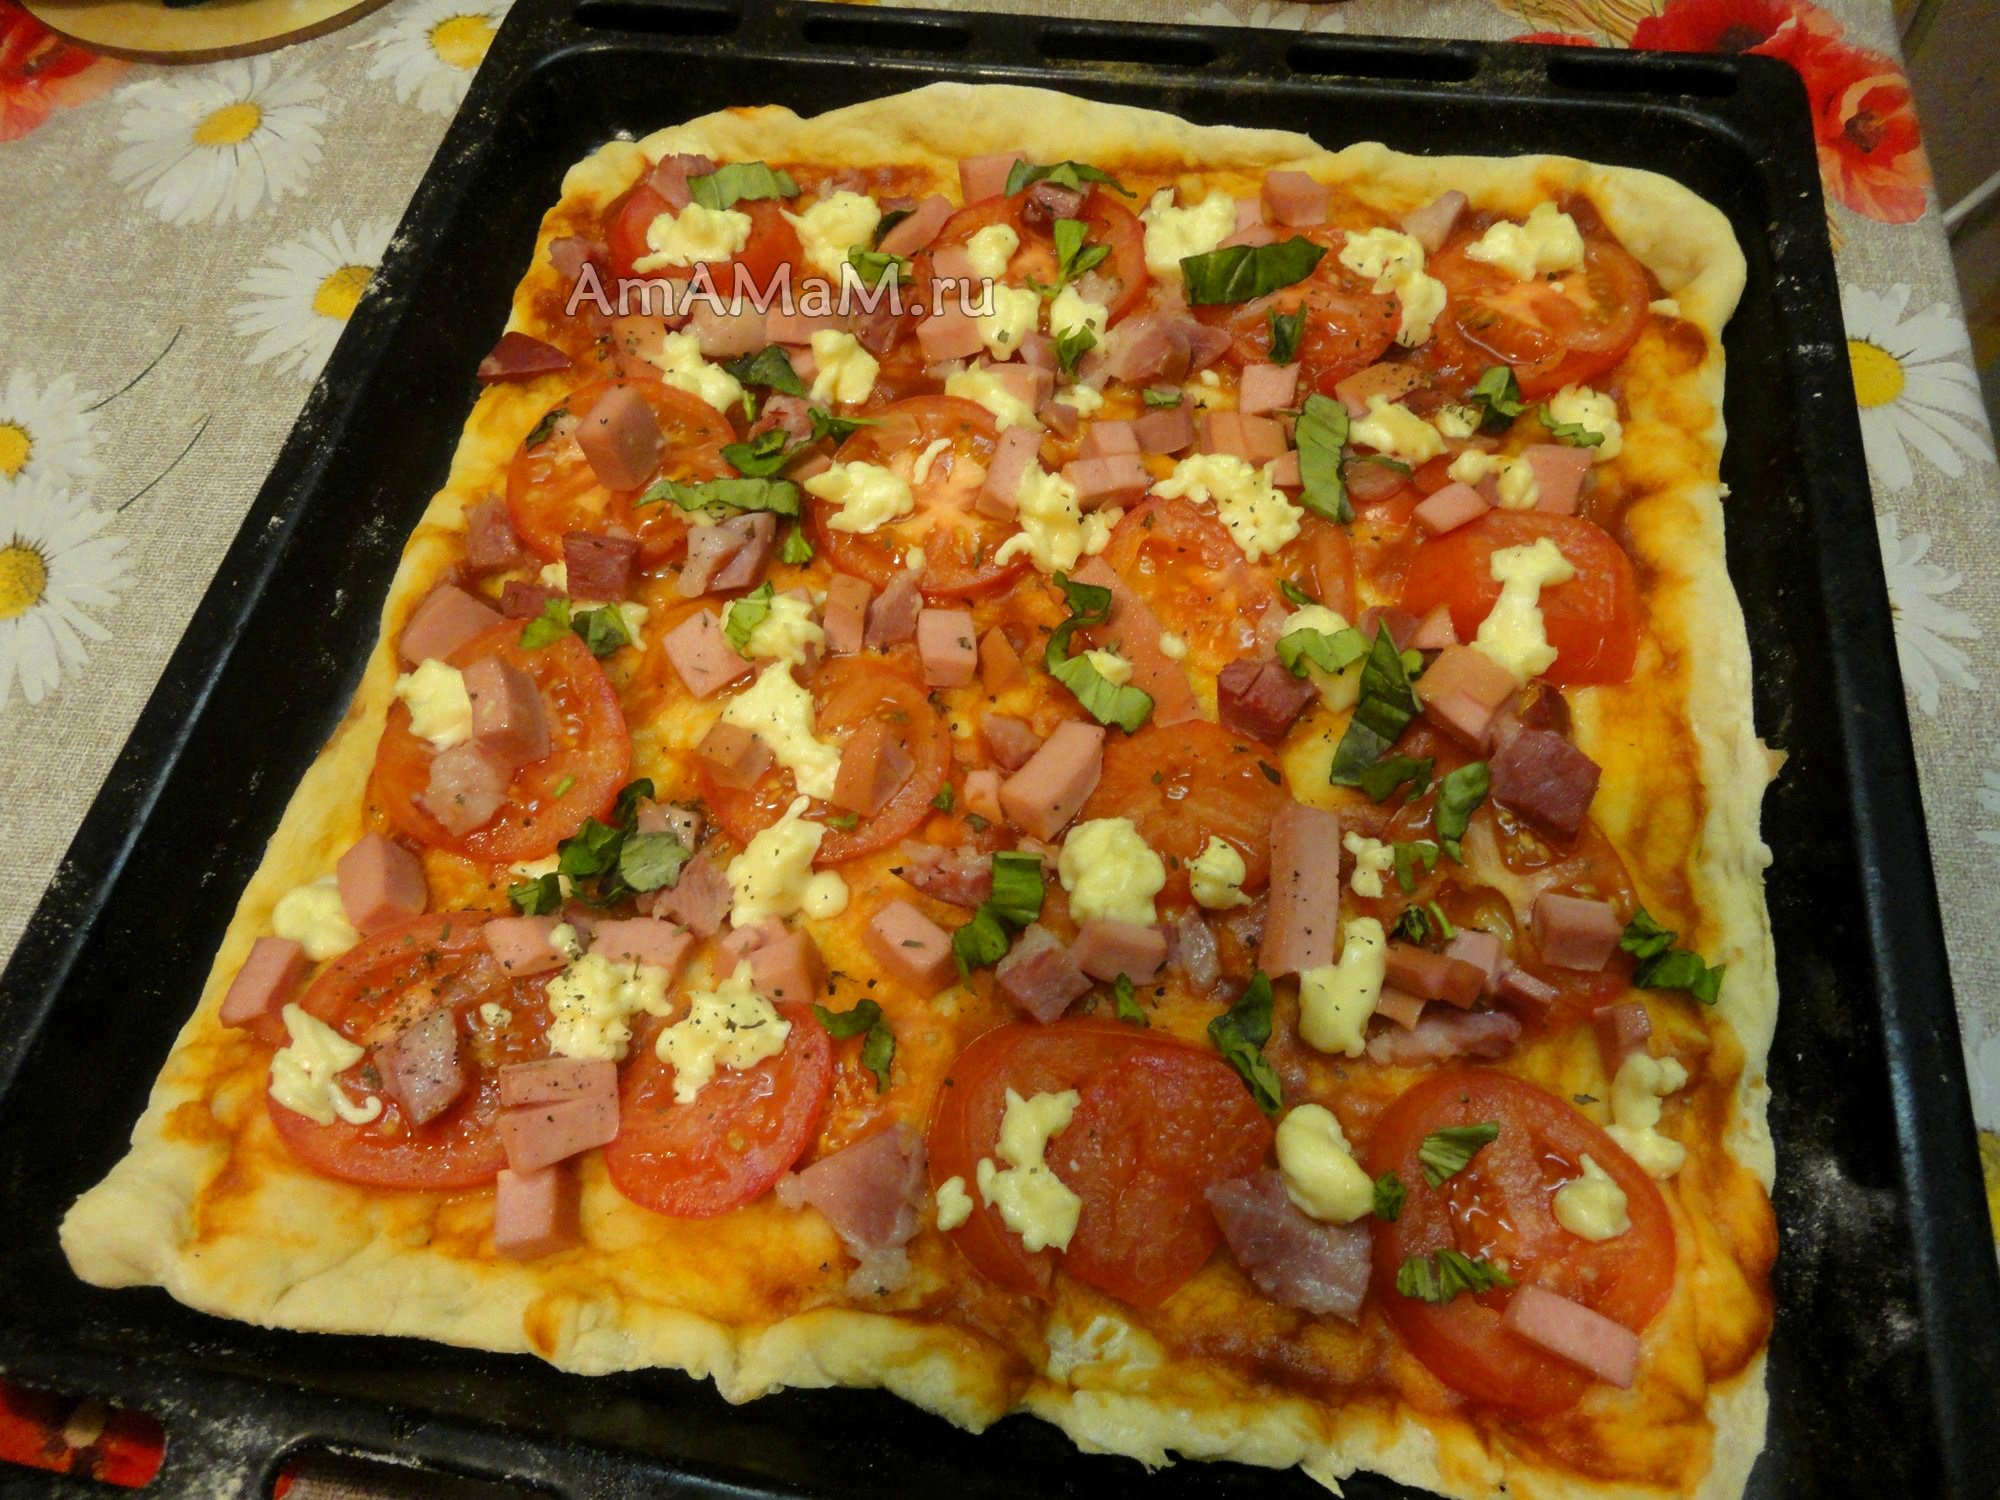 домашняя пицца с колбасой рецепт приготовления в домашних условиях фото 90